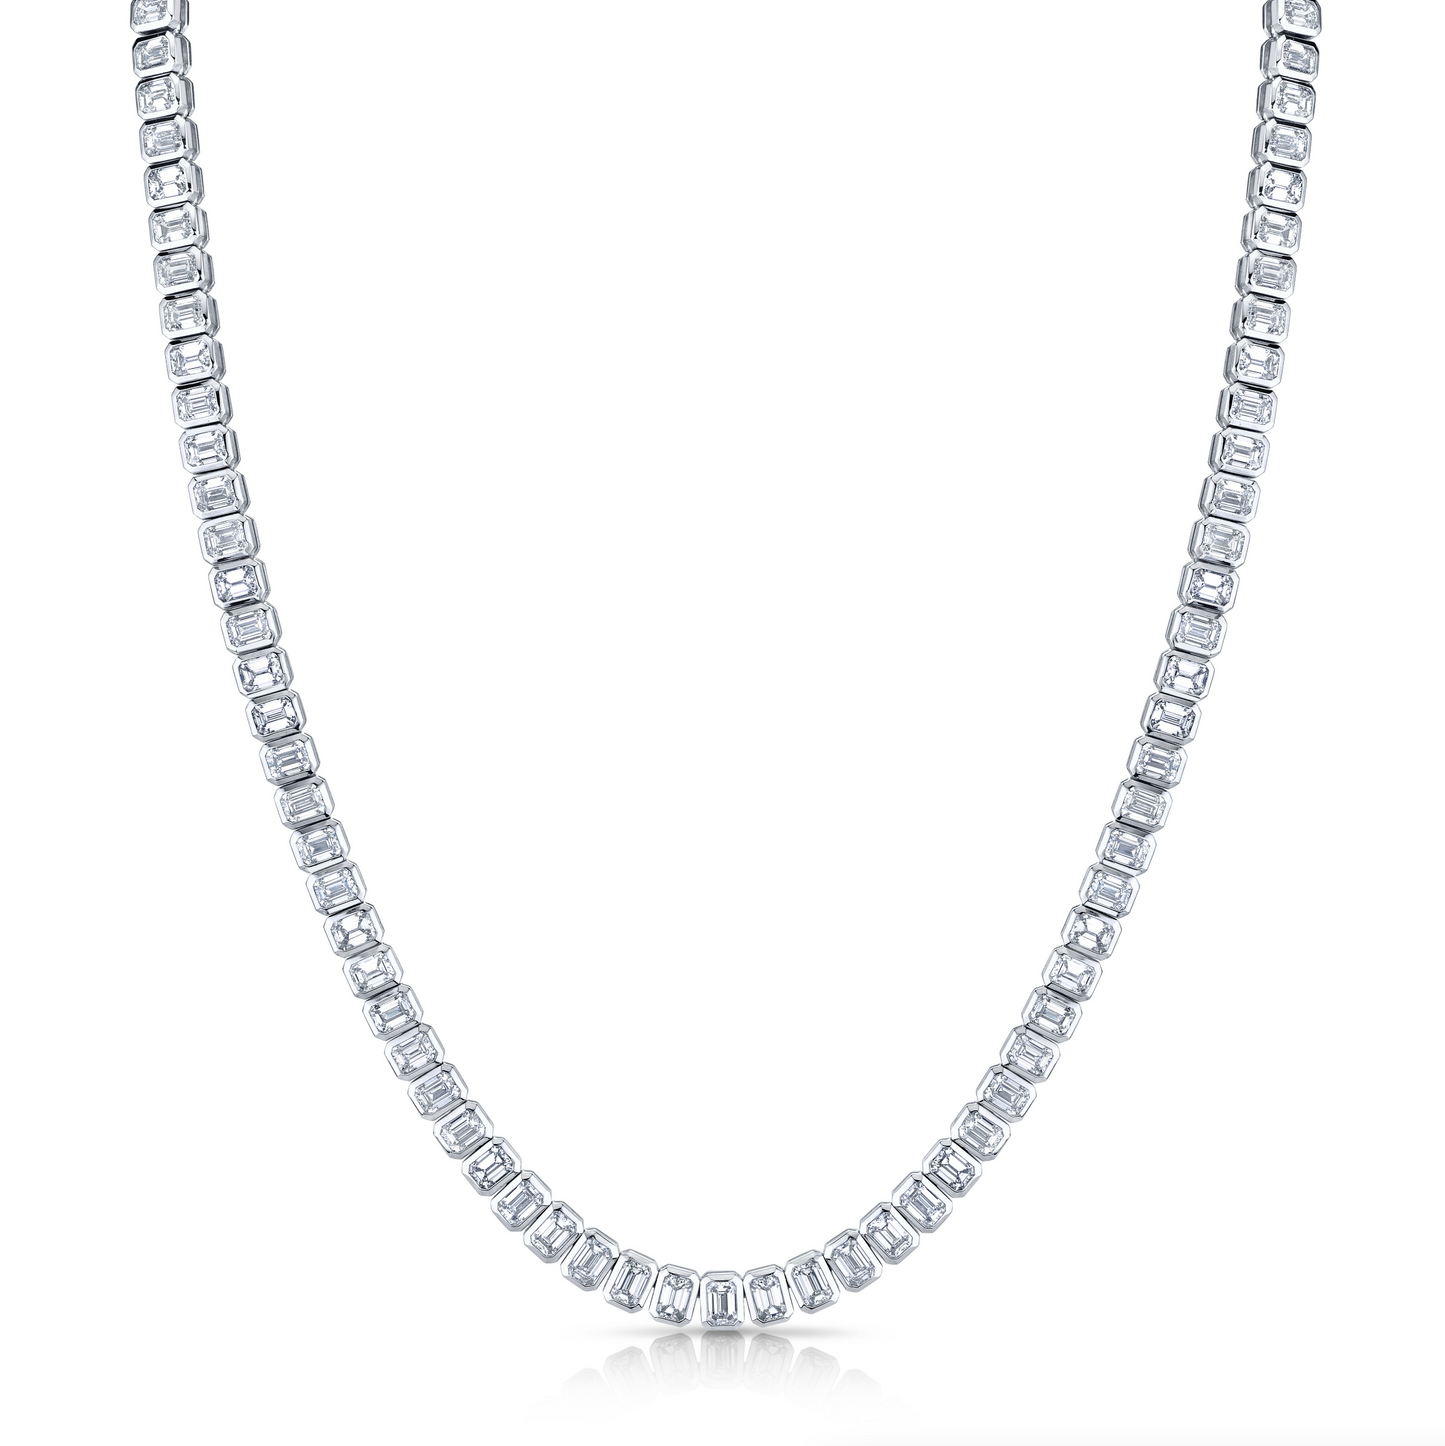 19.38 Carat Bezel-Set Diamond Necklace